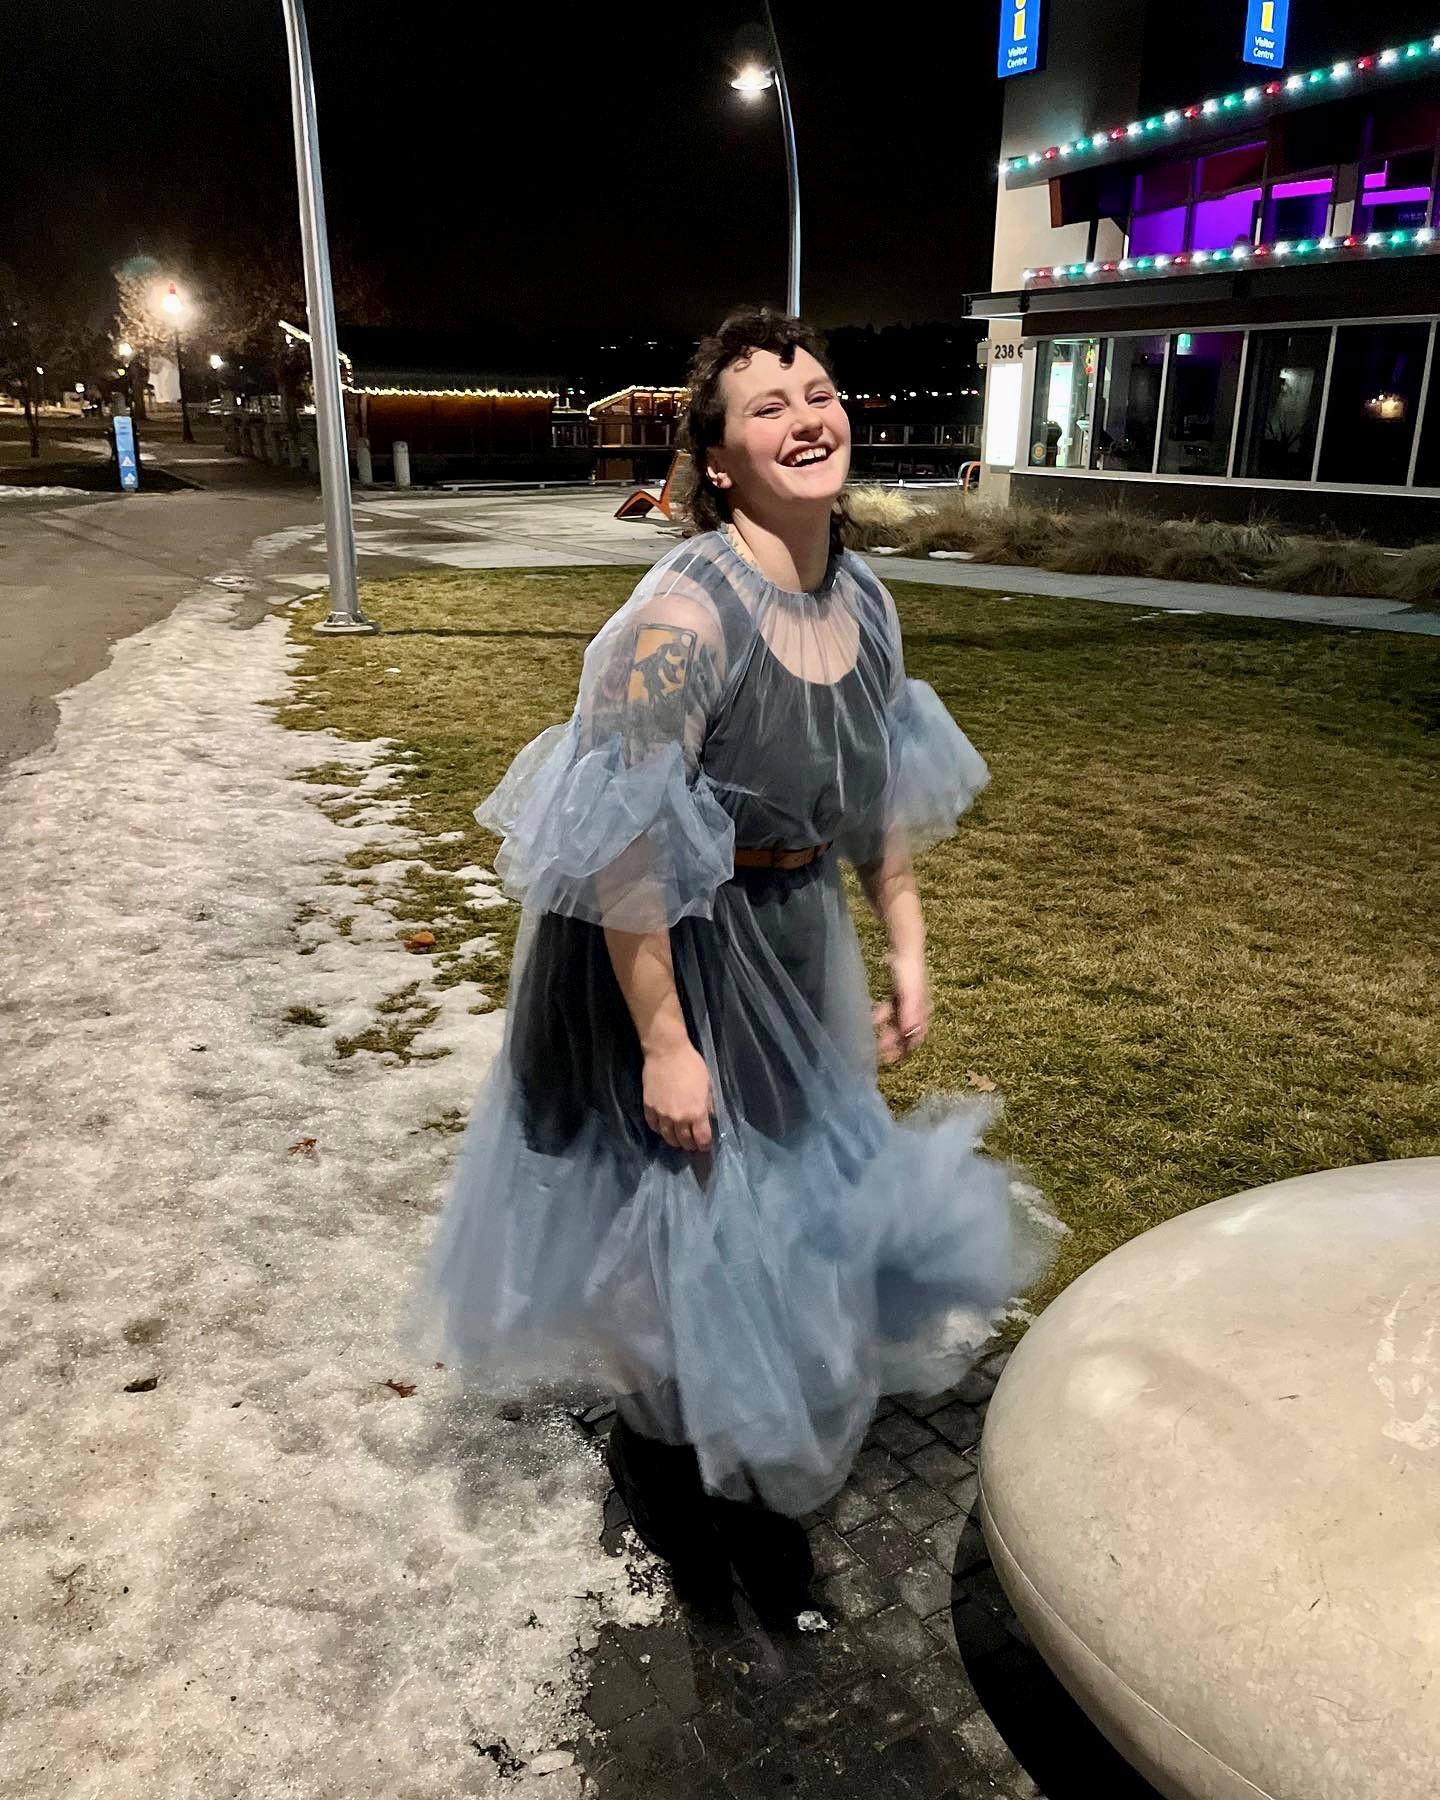 Erin Scott smiling in a blue dress